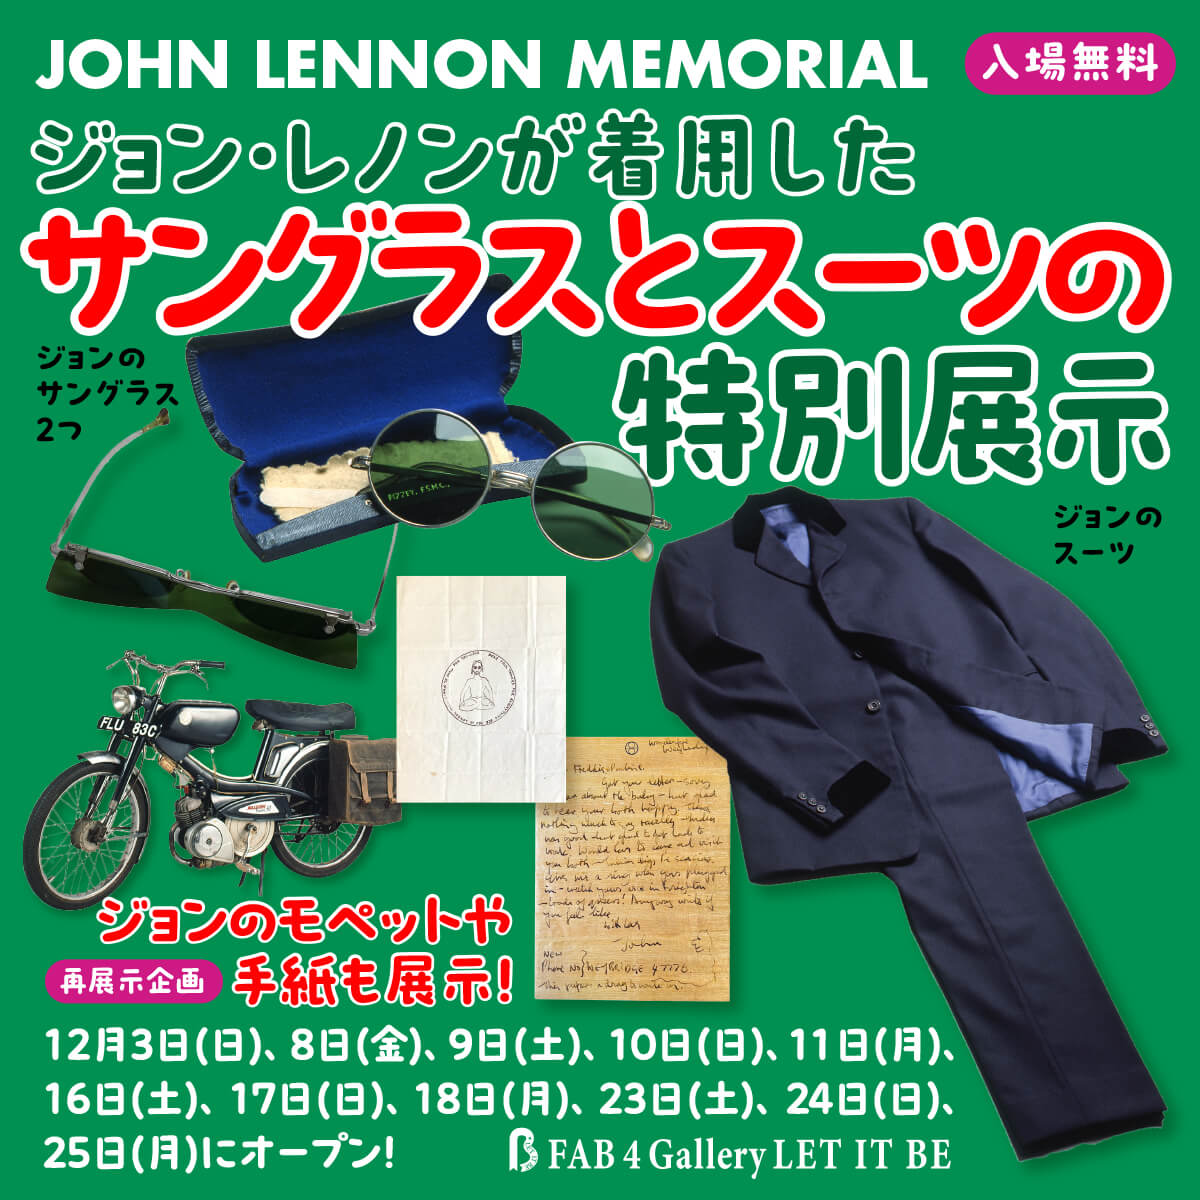 ジョン・レノンが着用したサングラスとスーツの特別展示